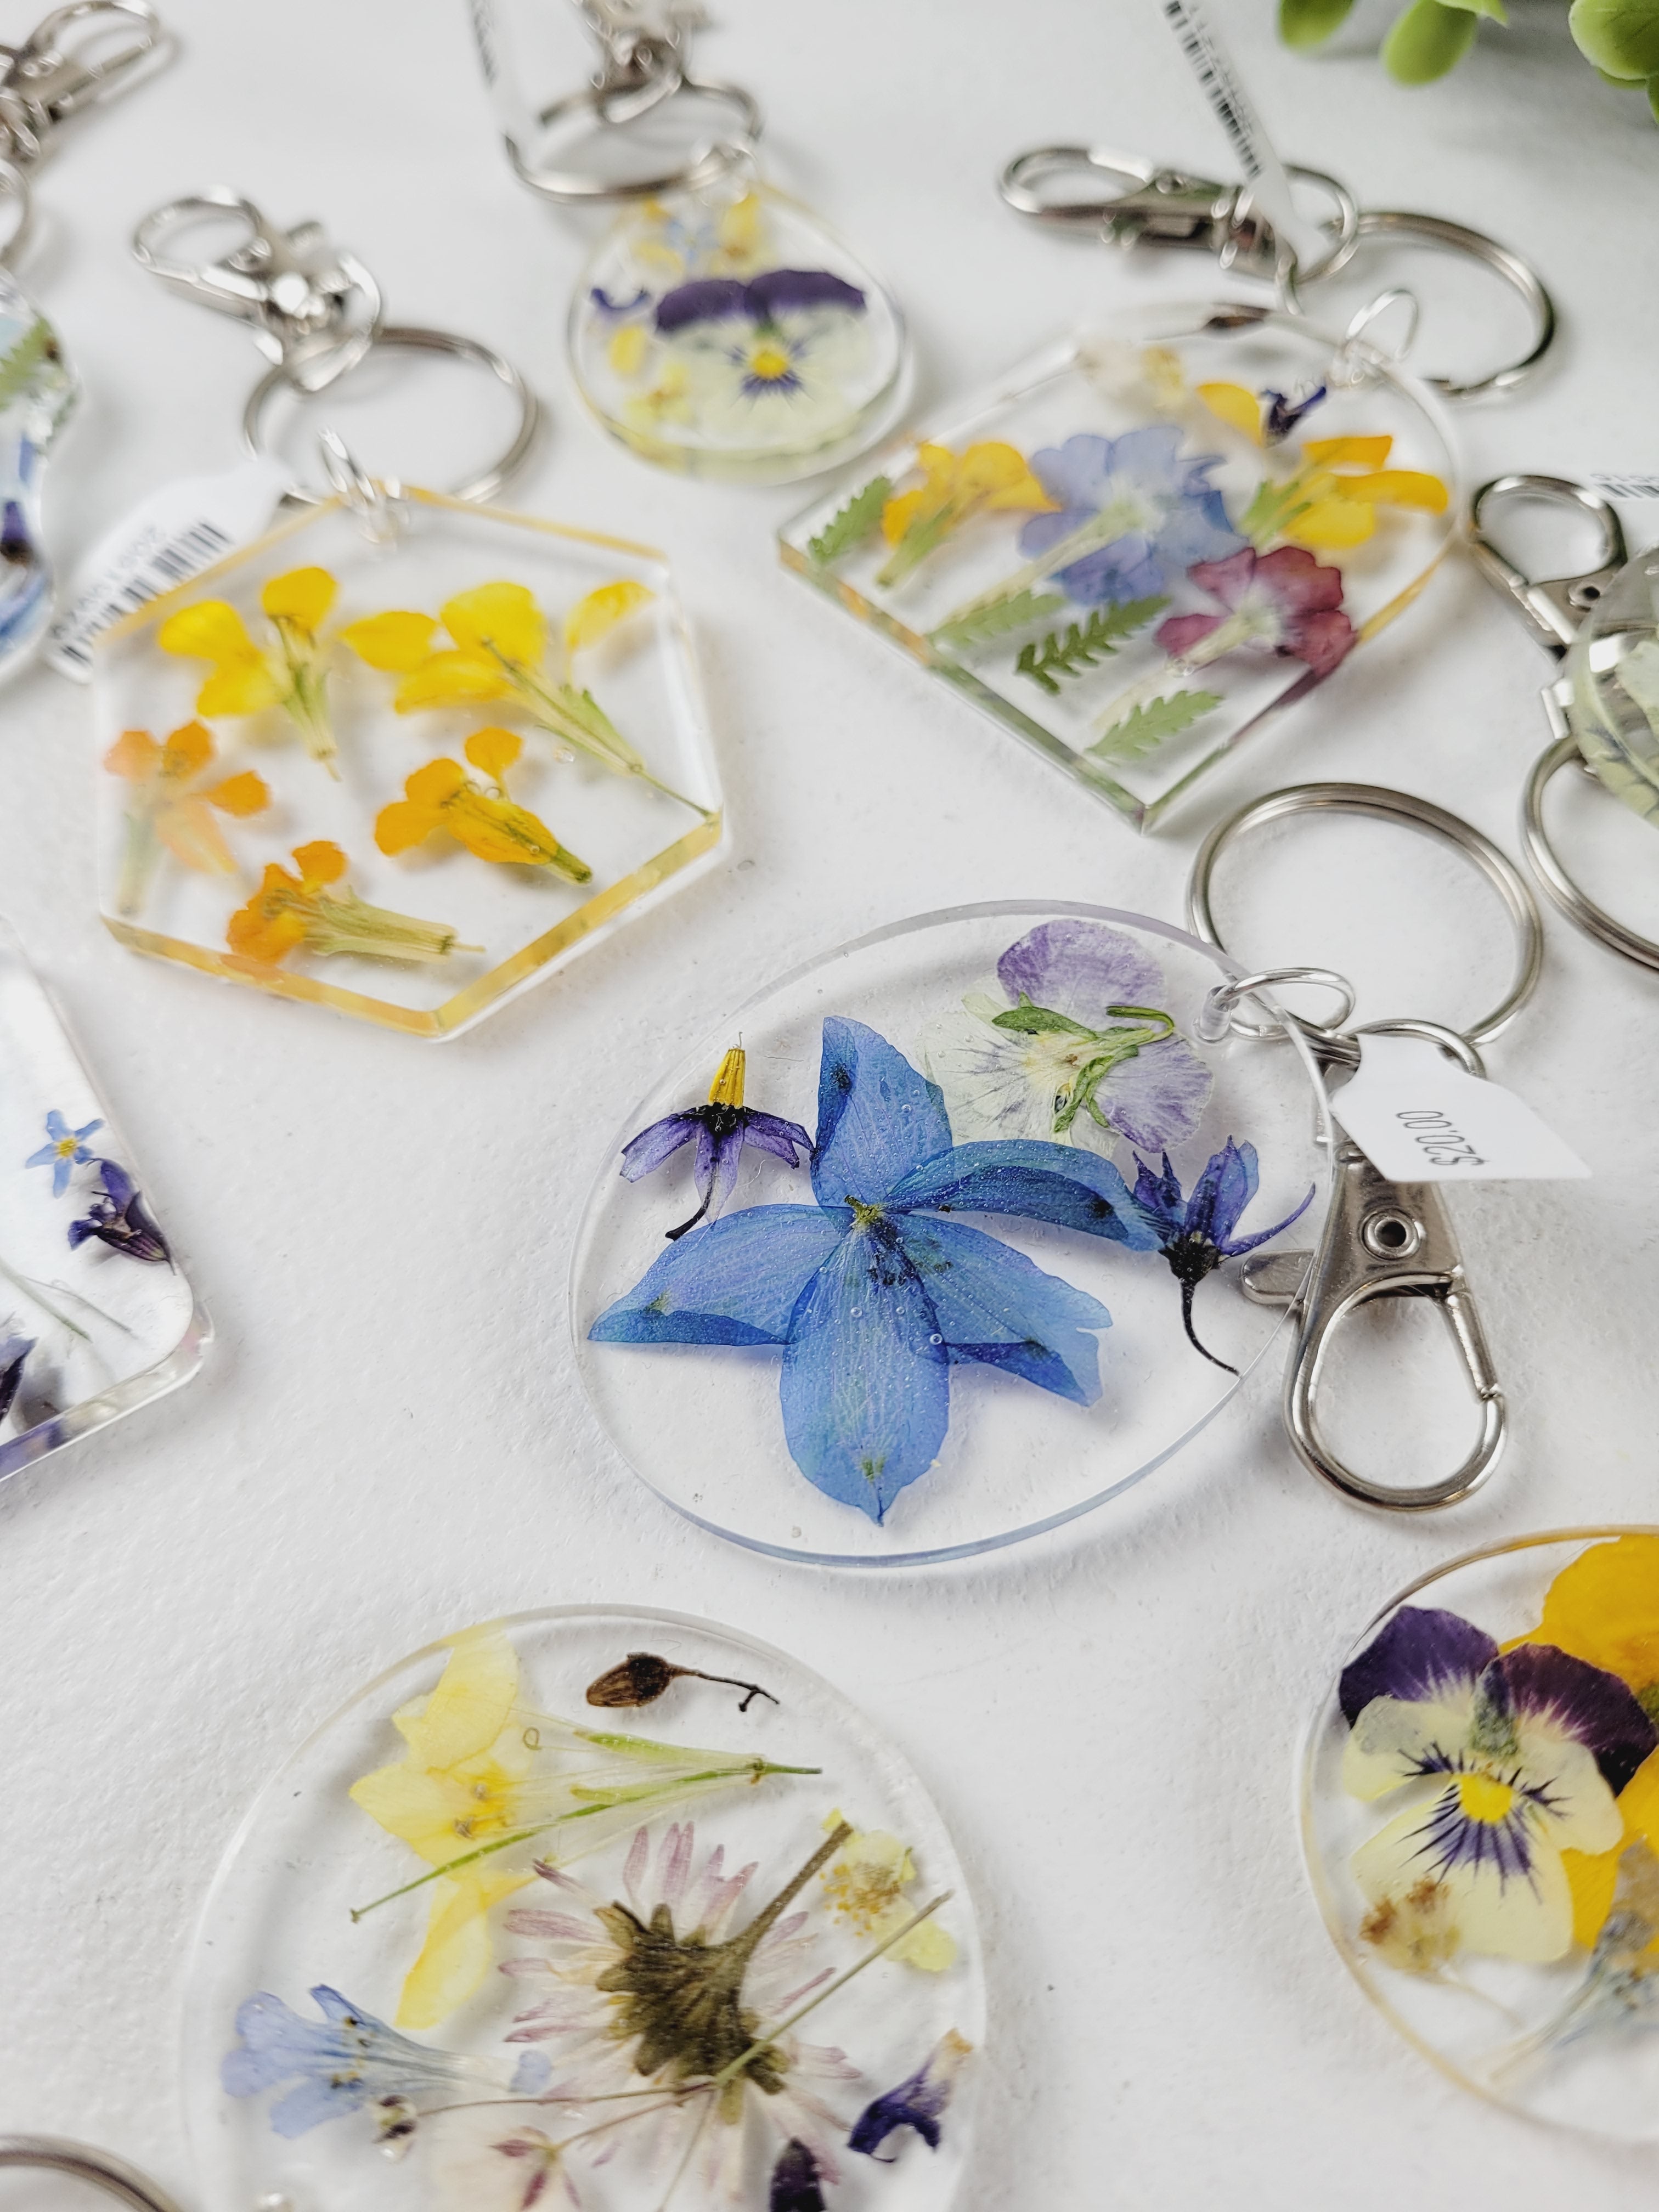 EVENS MORE Resin Keychain Kit 200 Gm Tassels Glitter Mini Flower - Resin  Keychain Kit 